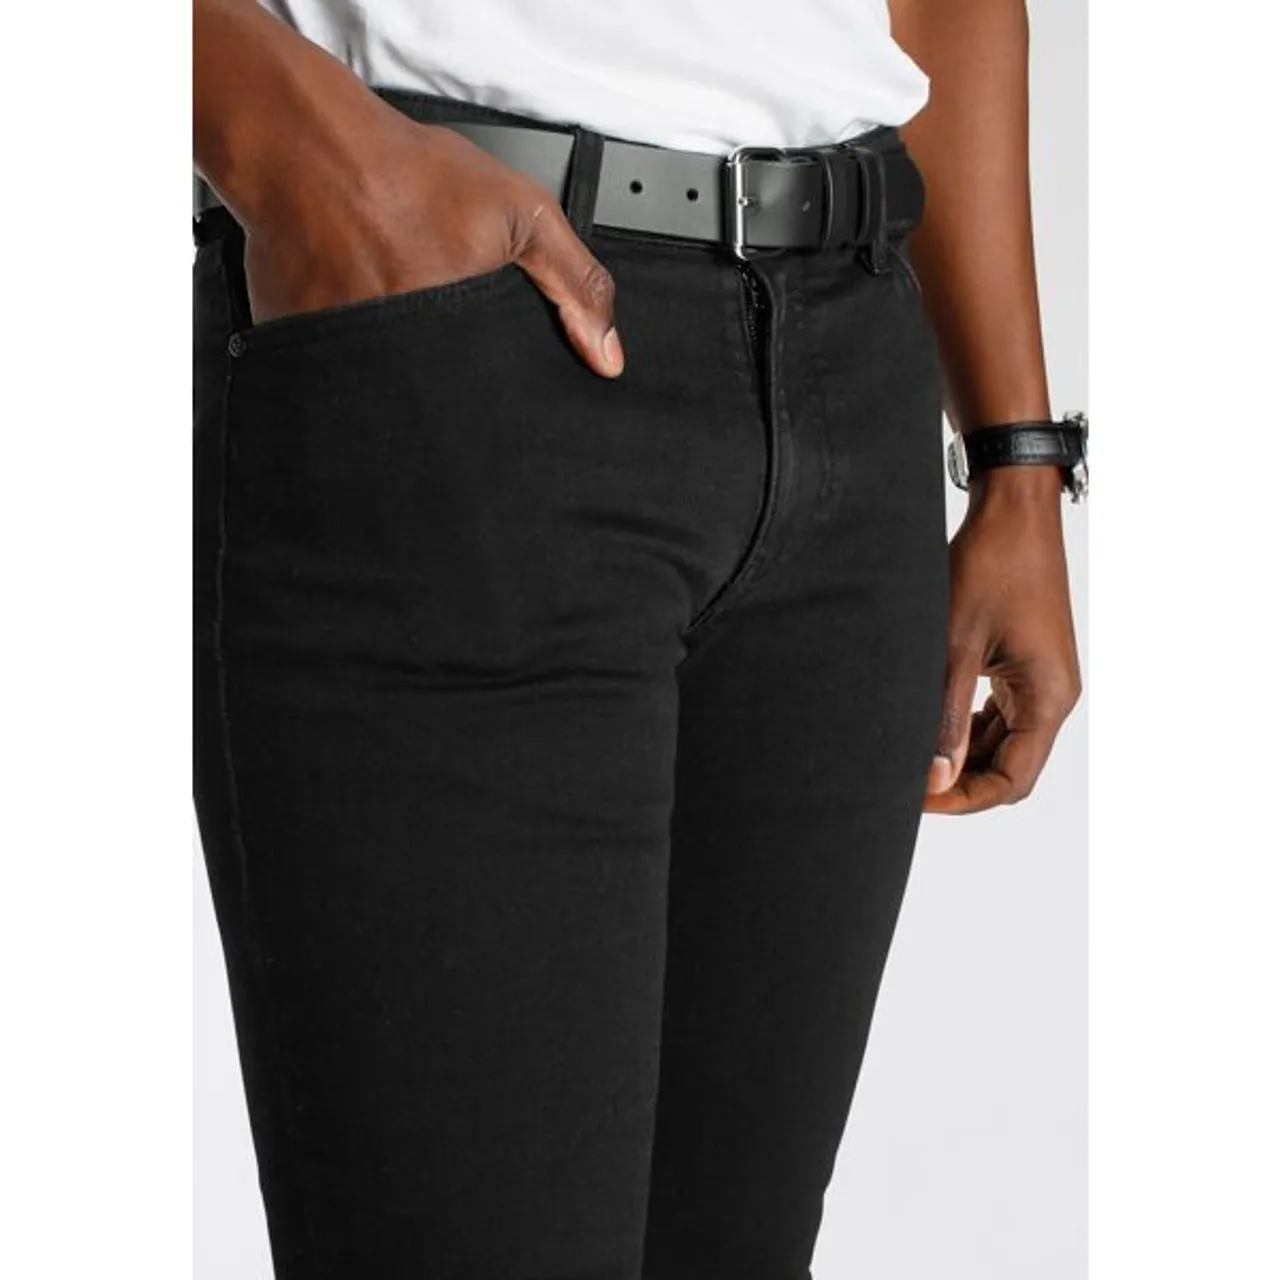 Stretch-Jeans DELMAO ""Reed"" Gr. 31, Länge 34, schwarz (black, black) Herren Jeans Stretch mit schöner Innenverarbeitung - NEUE MARKE